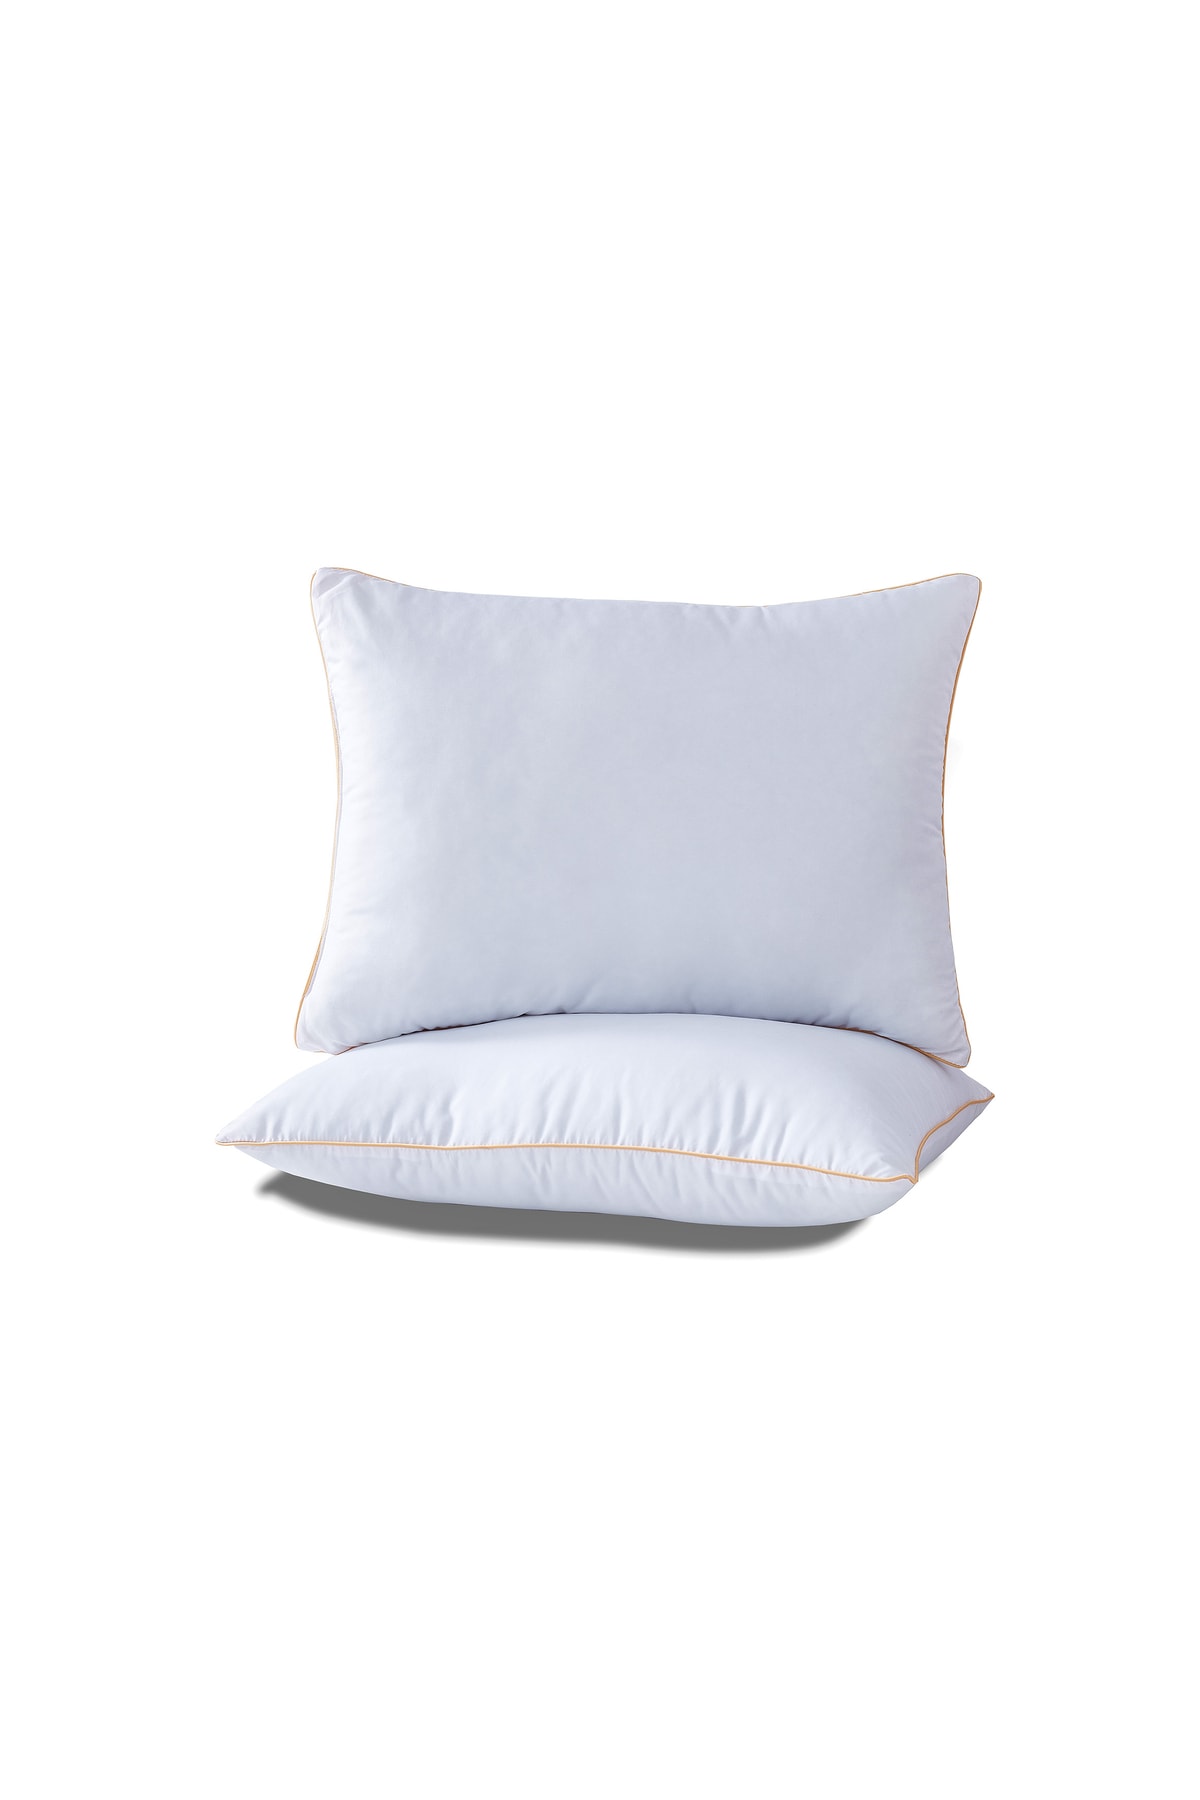 Komfort Home Biyeli Microjel Silikon Yastık 1000gr 50x70 Cm (2 Adet)